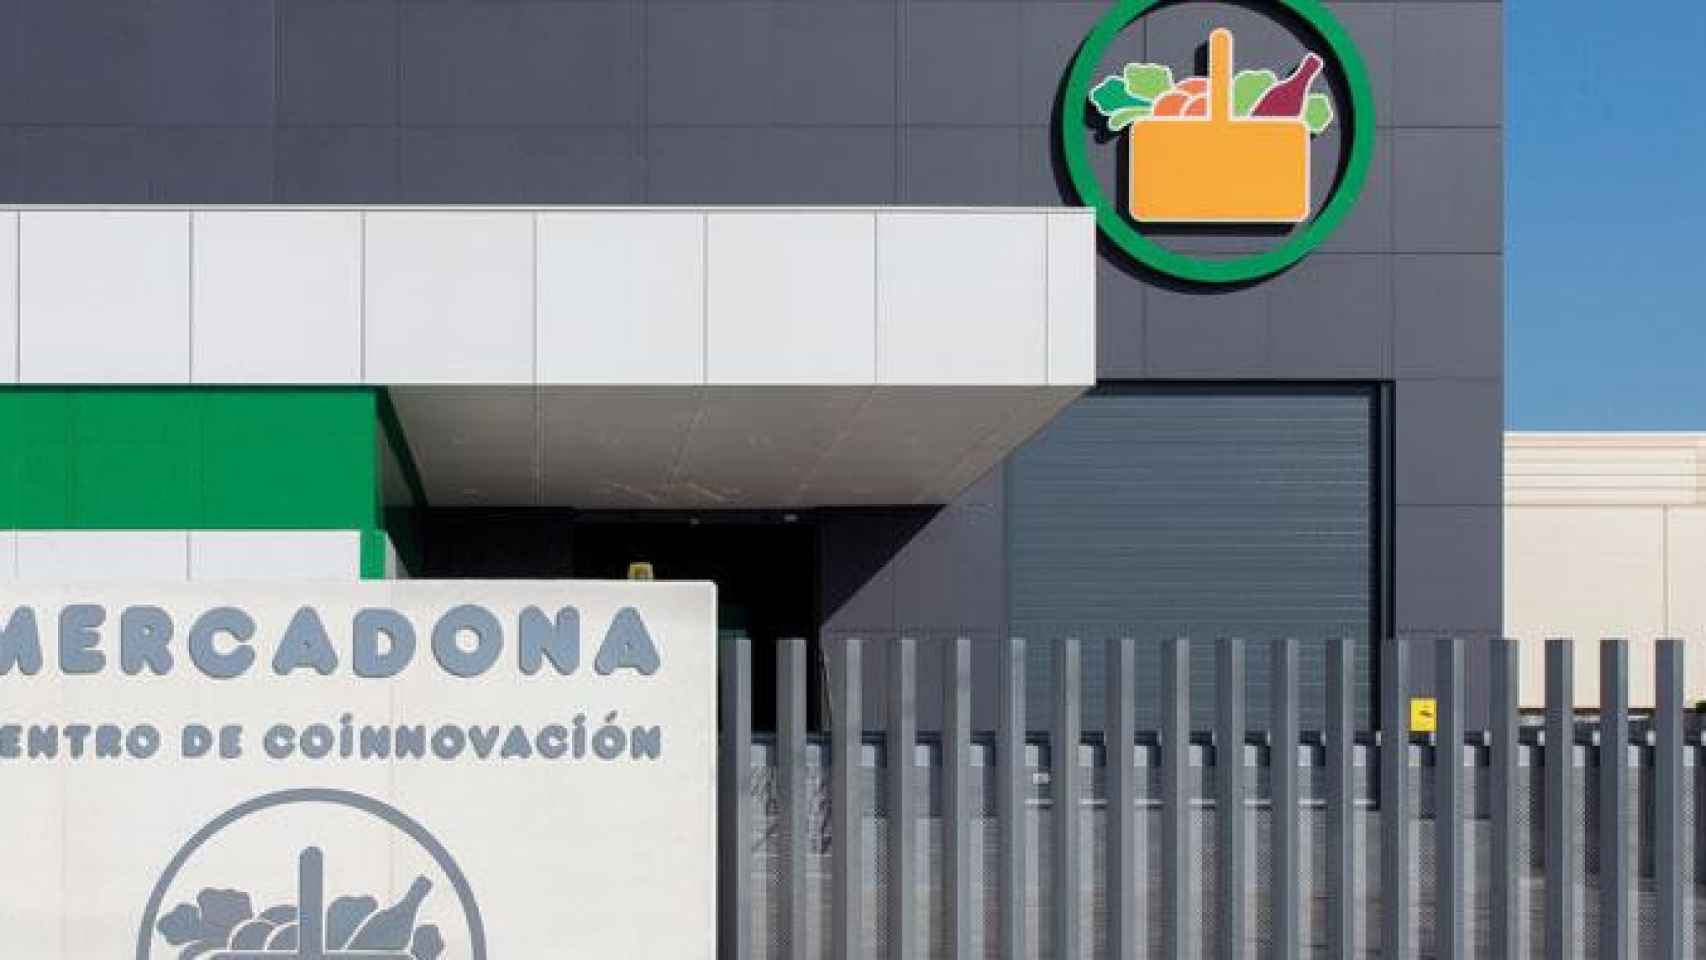 El Centro de Coinnovación de El Jarro ubicado en el municipio de Paterna (Valencia) que ha sido reconocido por el Instituto Cerdà / MERCADONA